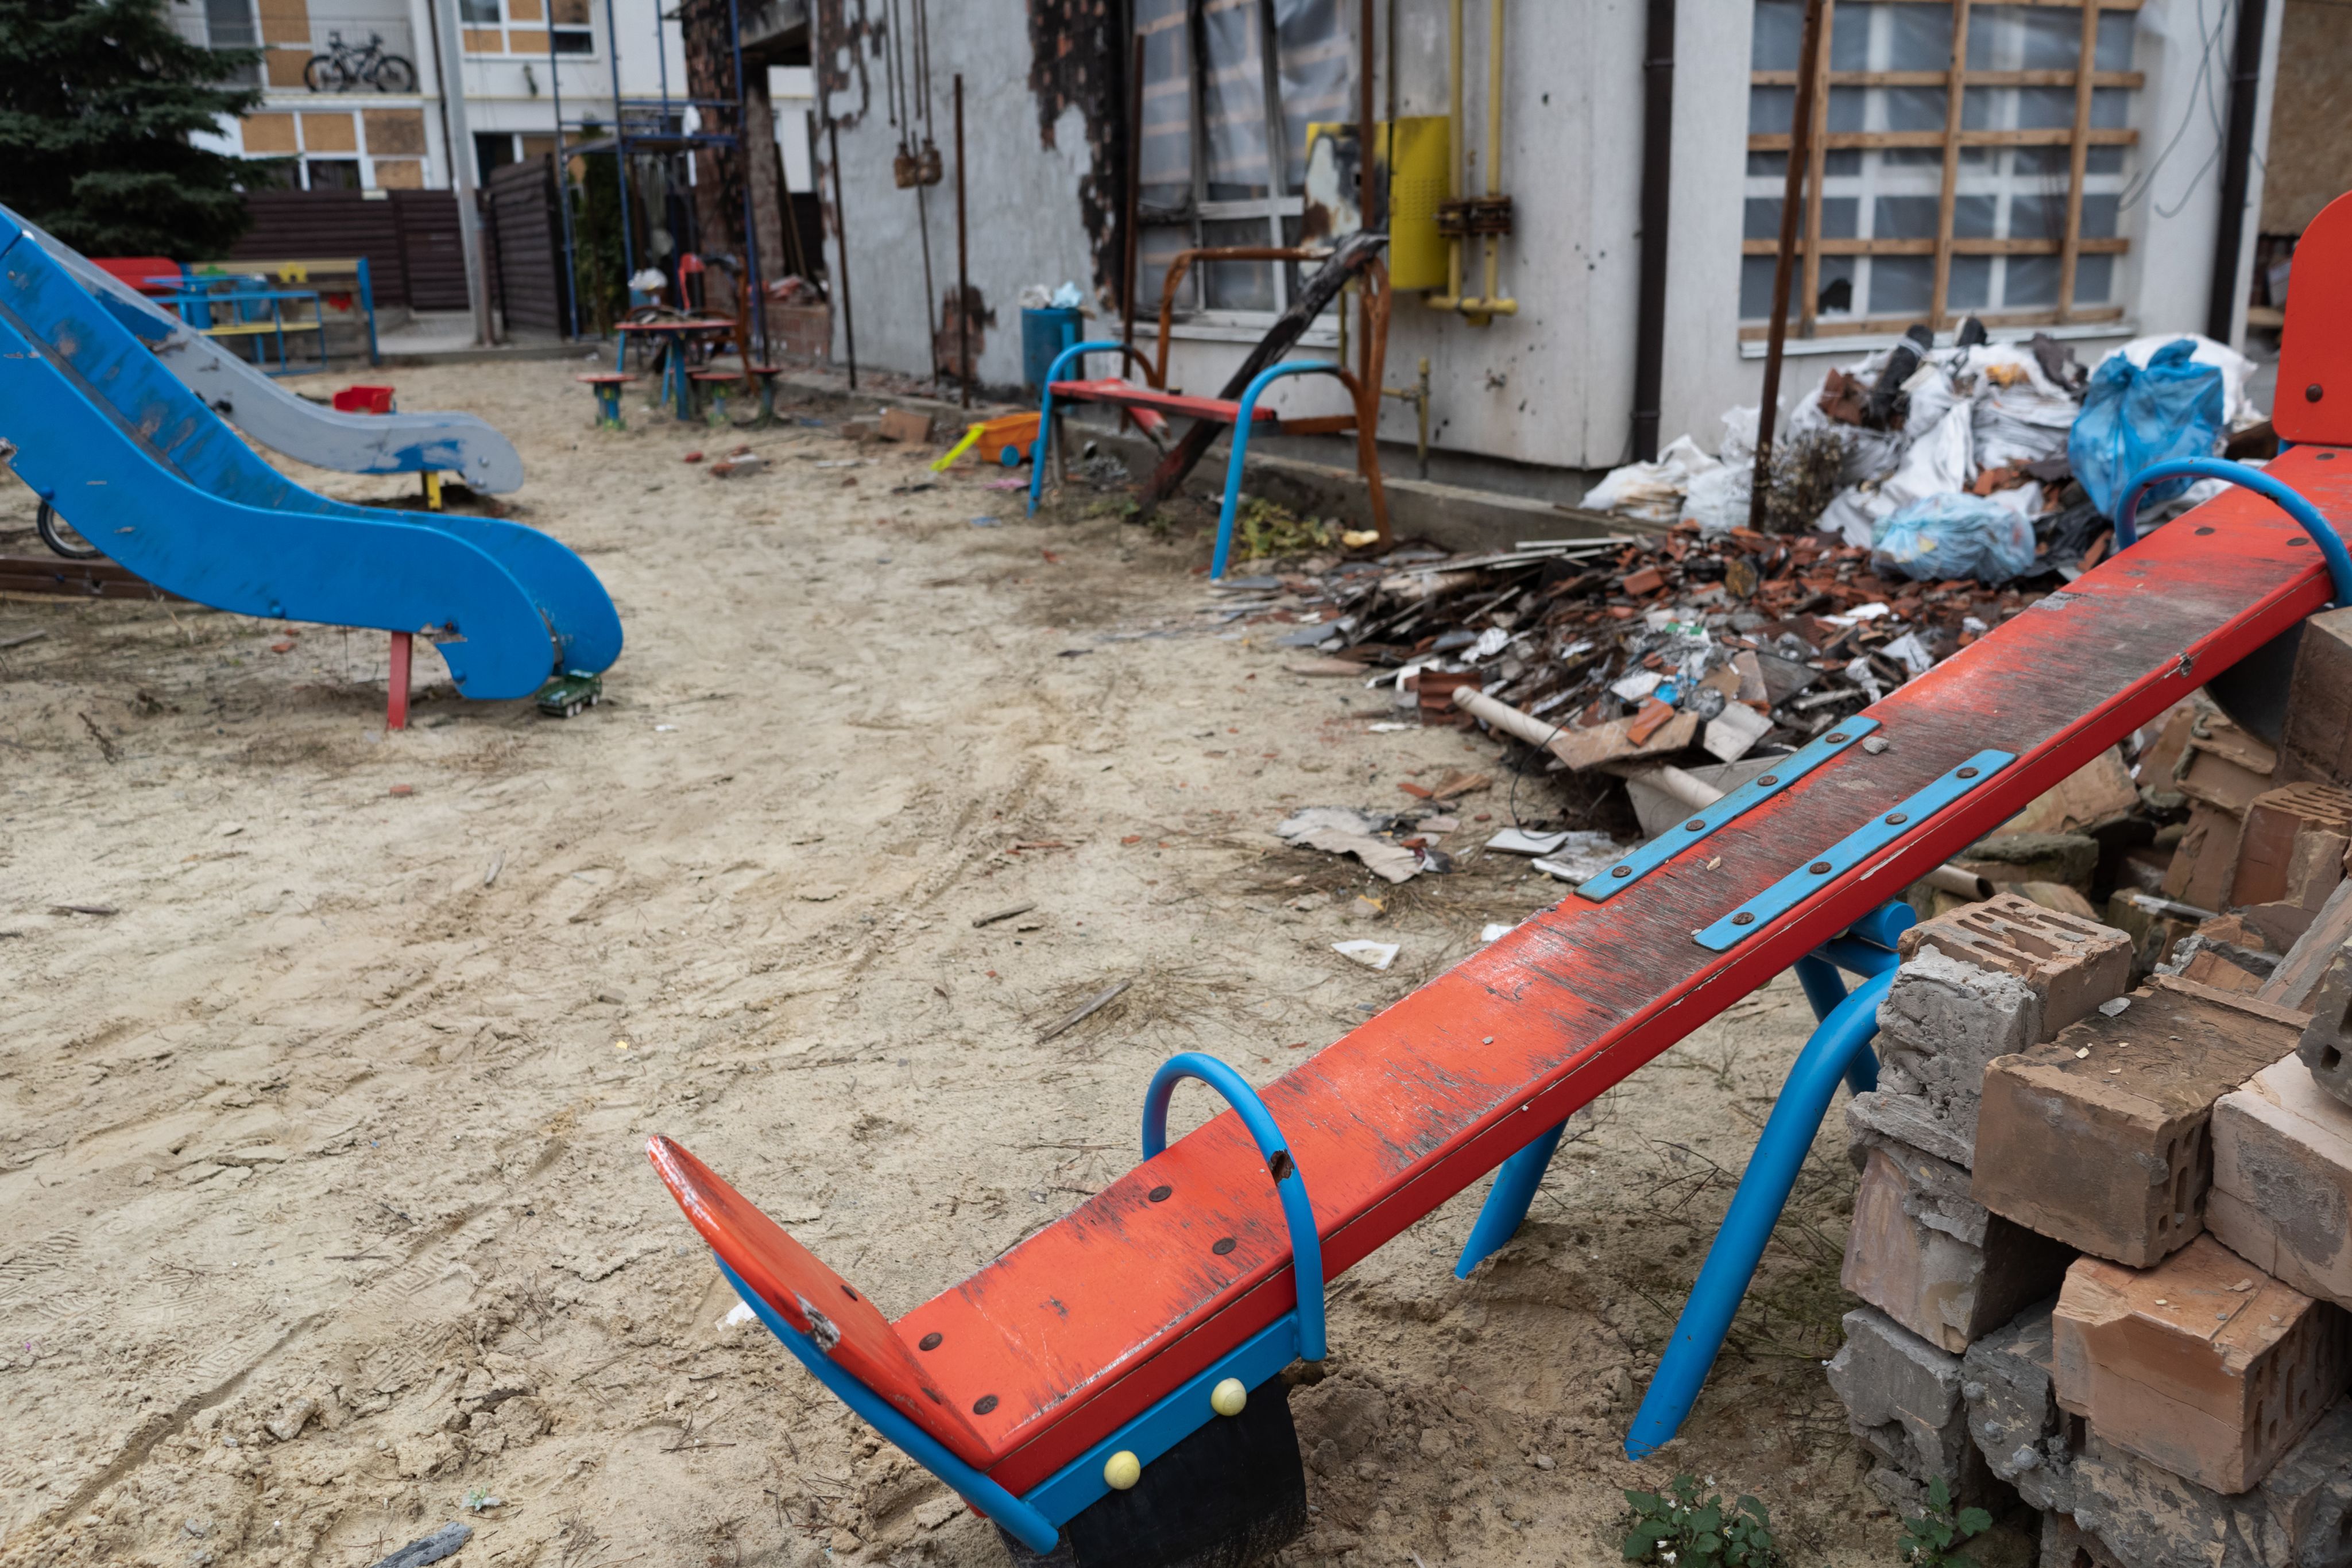 A damaged playground in Kyiv, Ukraine.